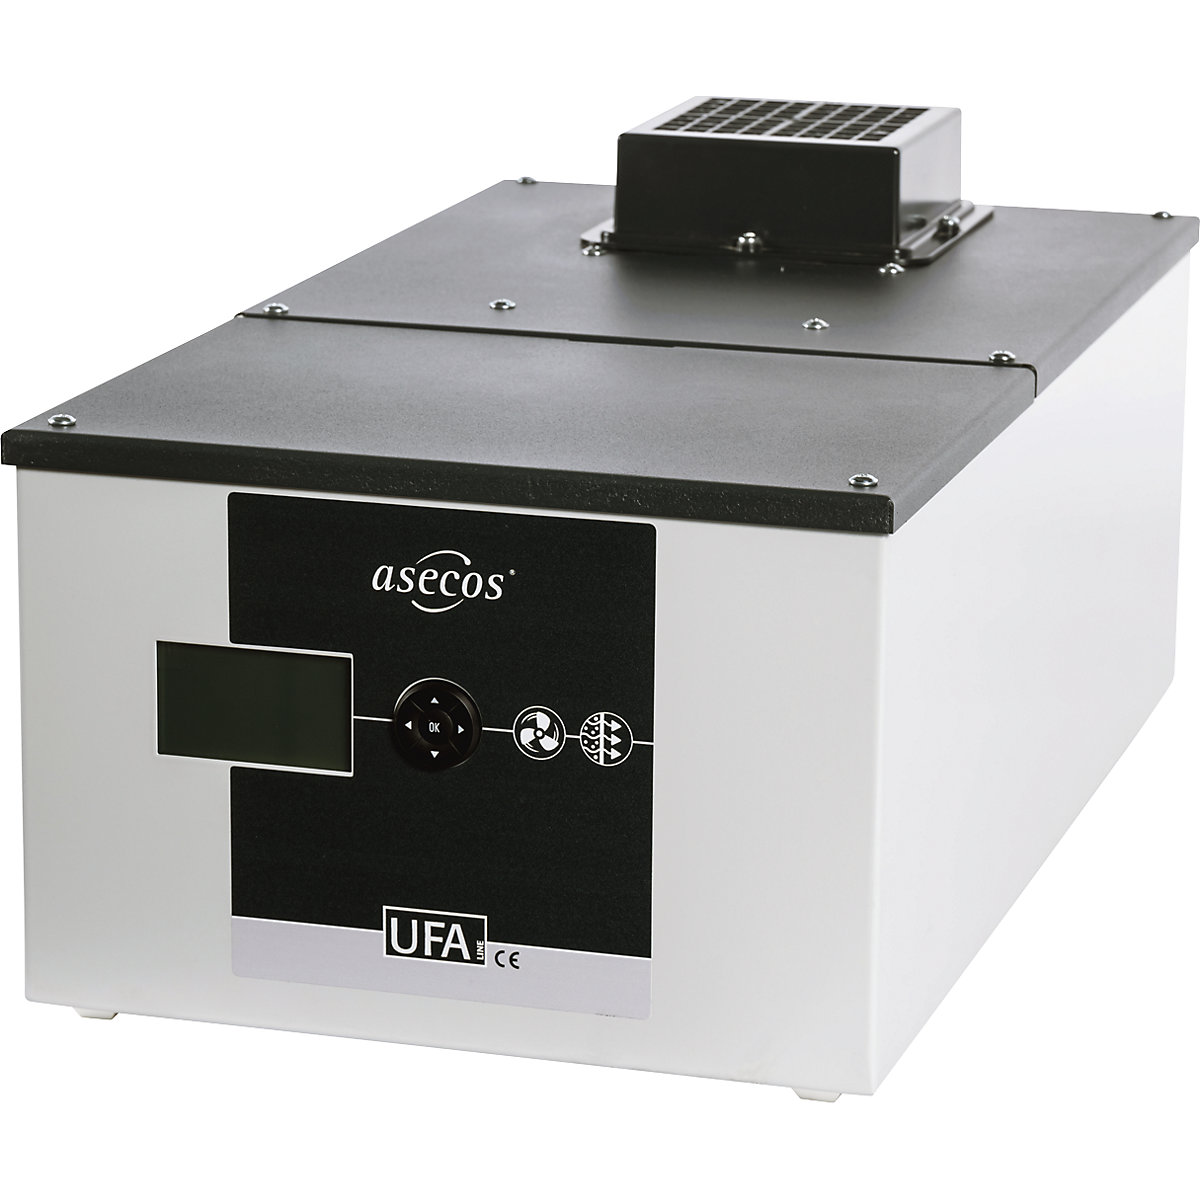 Caja-filtro de recirculación de aire – asecos